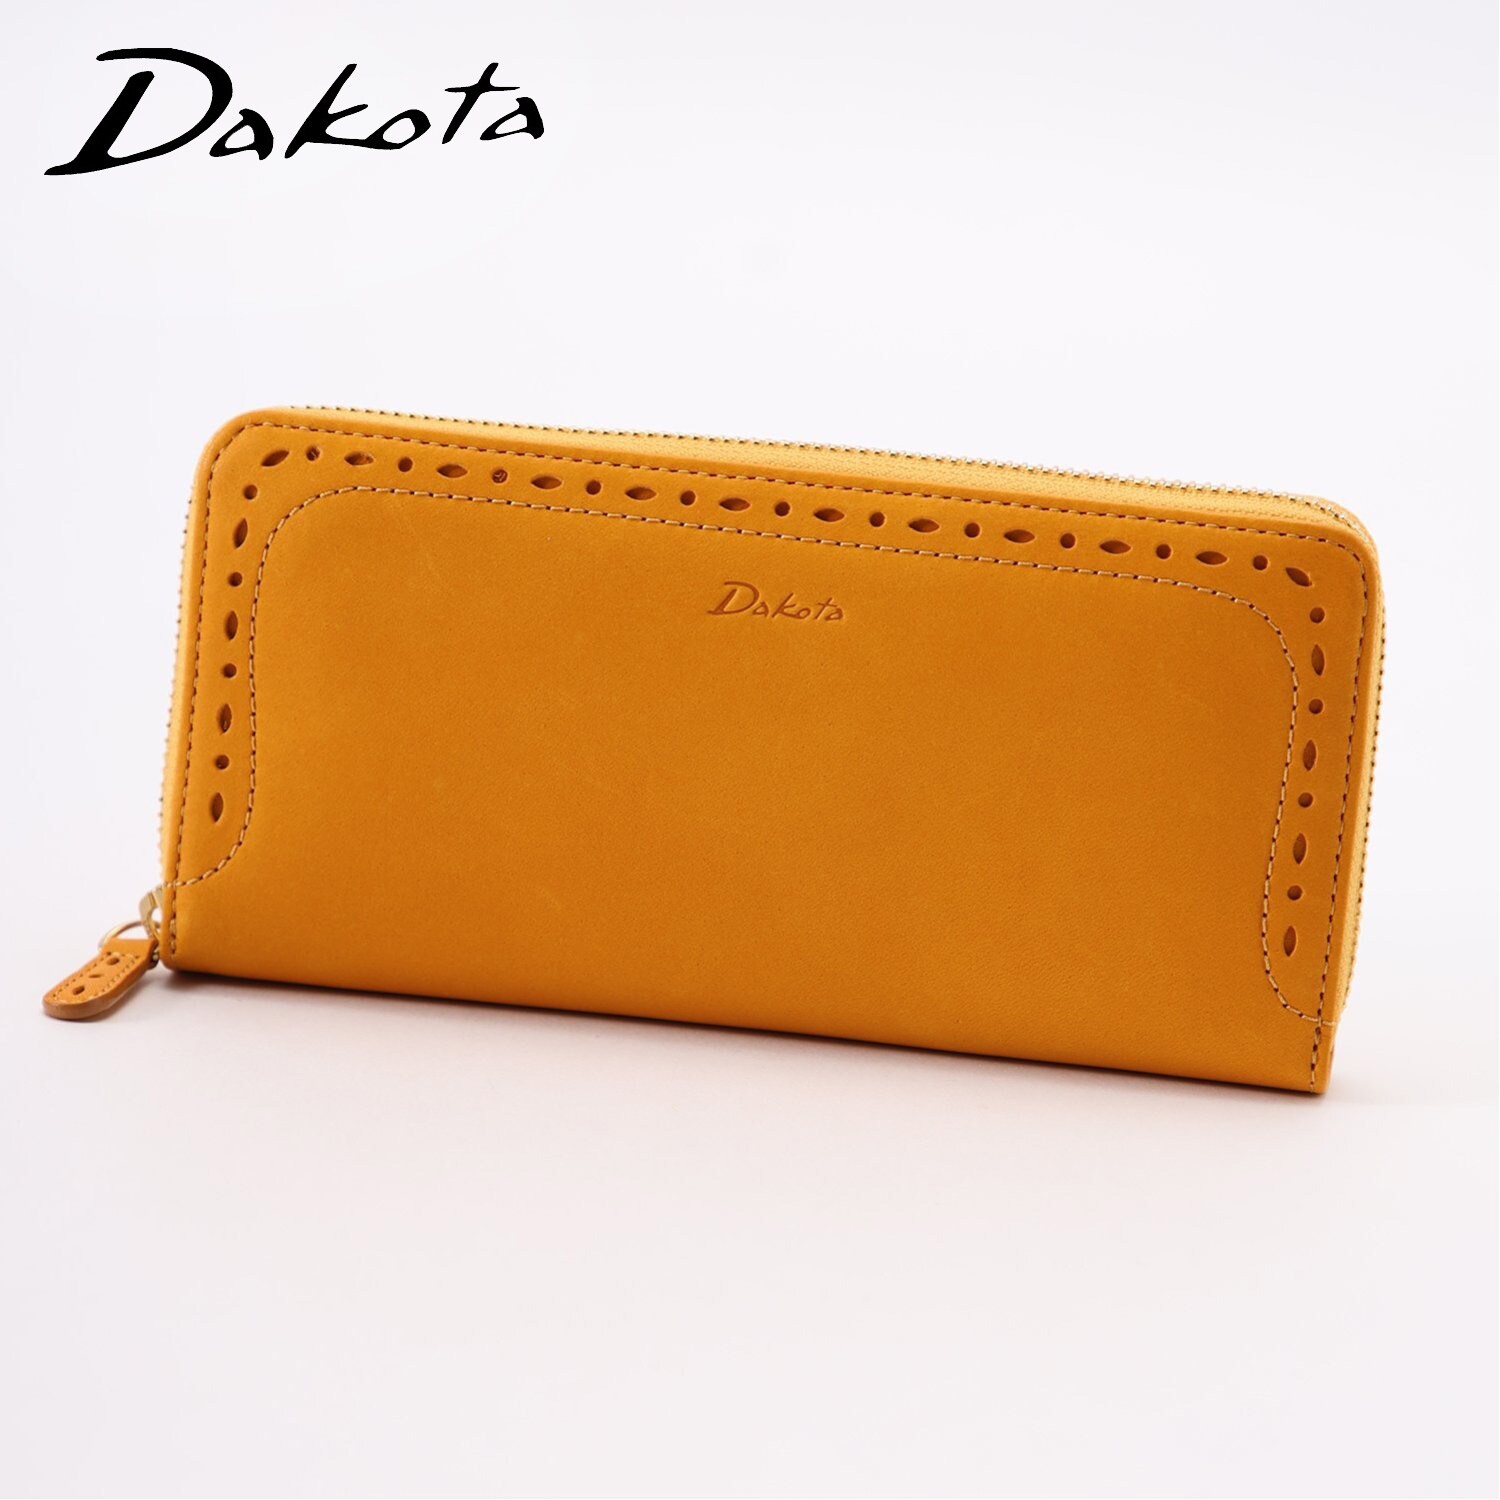 【ダコタ/Dakota】タッチ感の良いレザーラウンドF財布